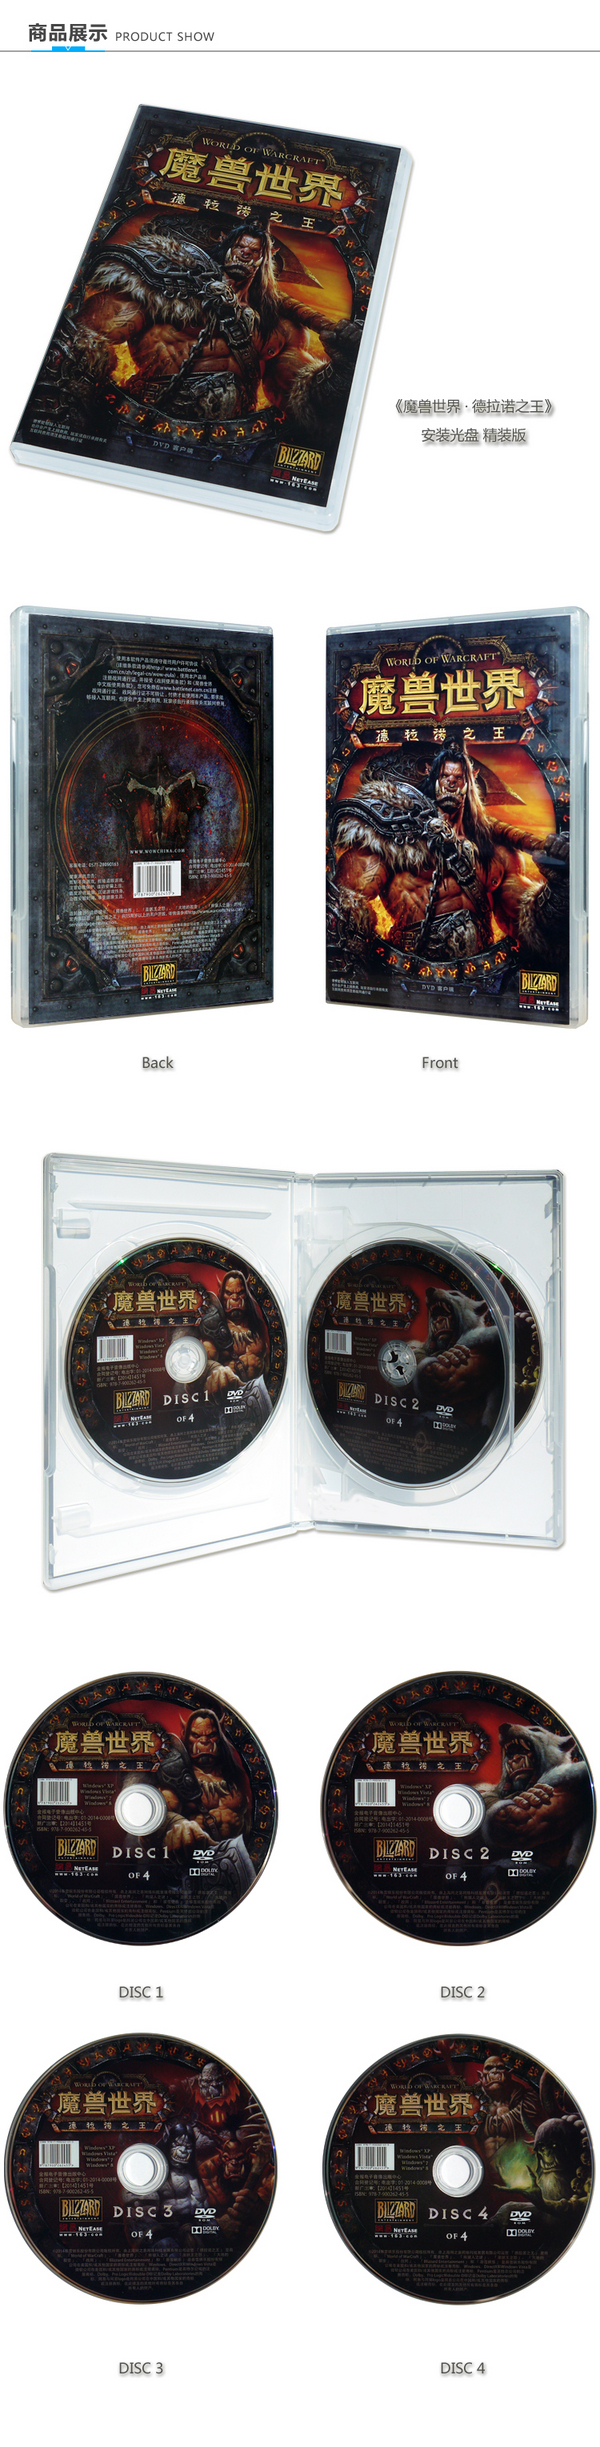 魔兽世界6.0德拉诺之王简体中文客户端光盘上市